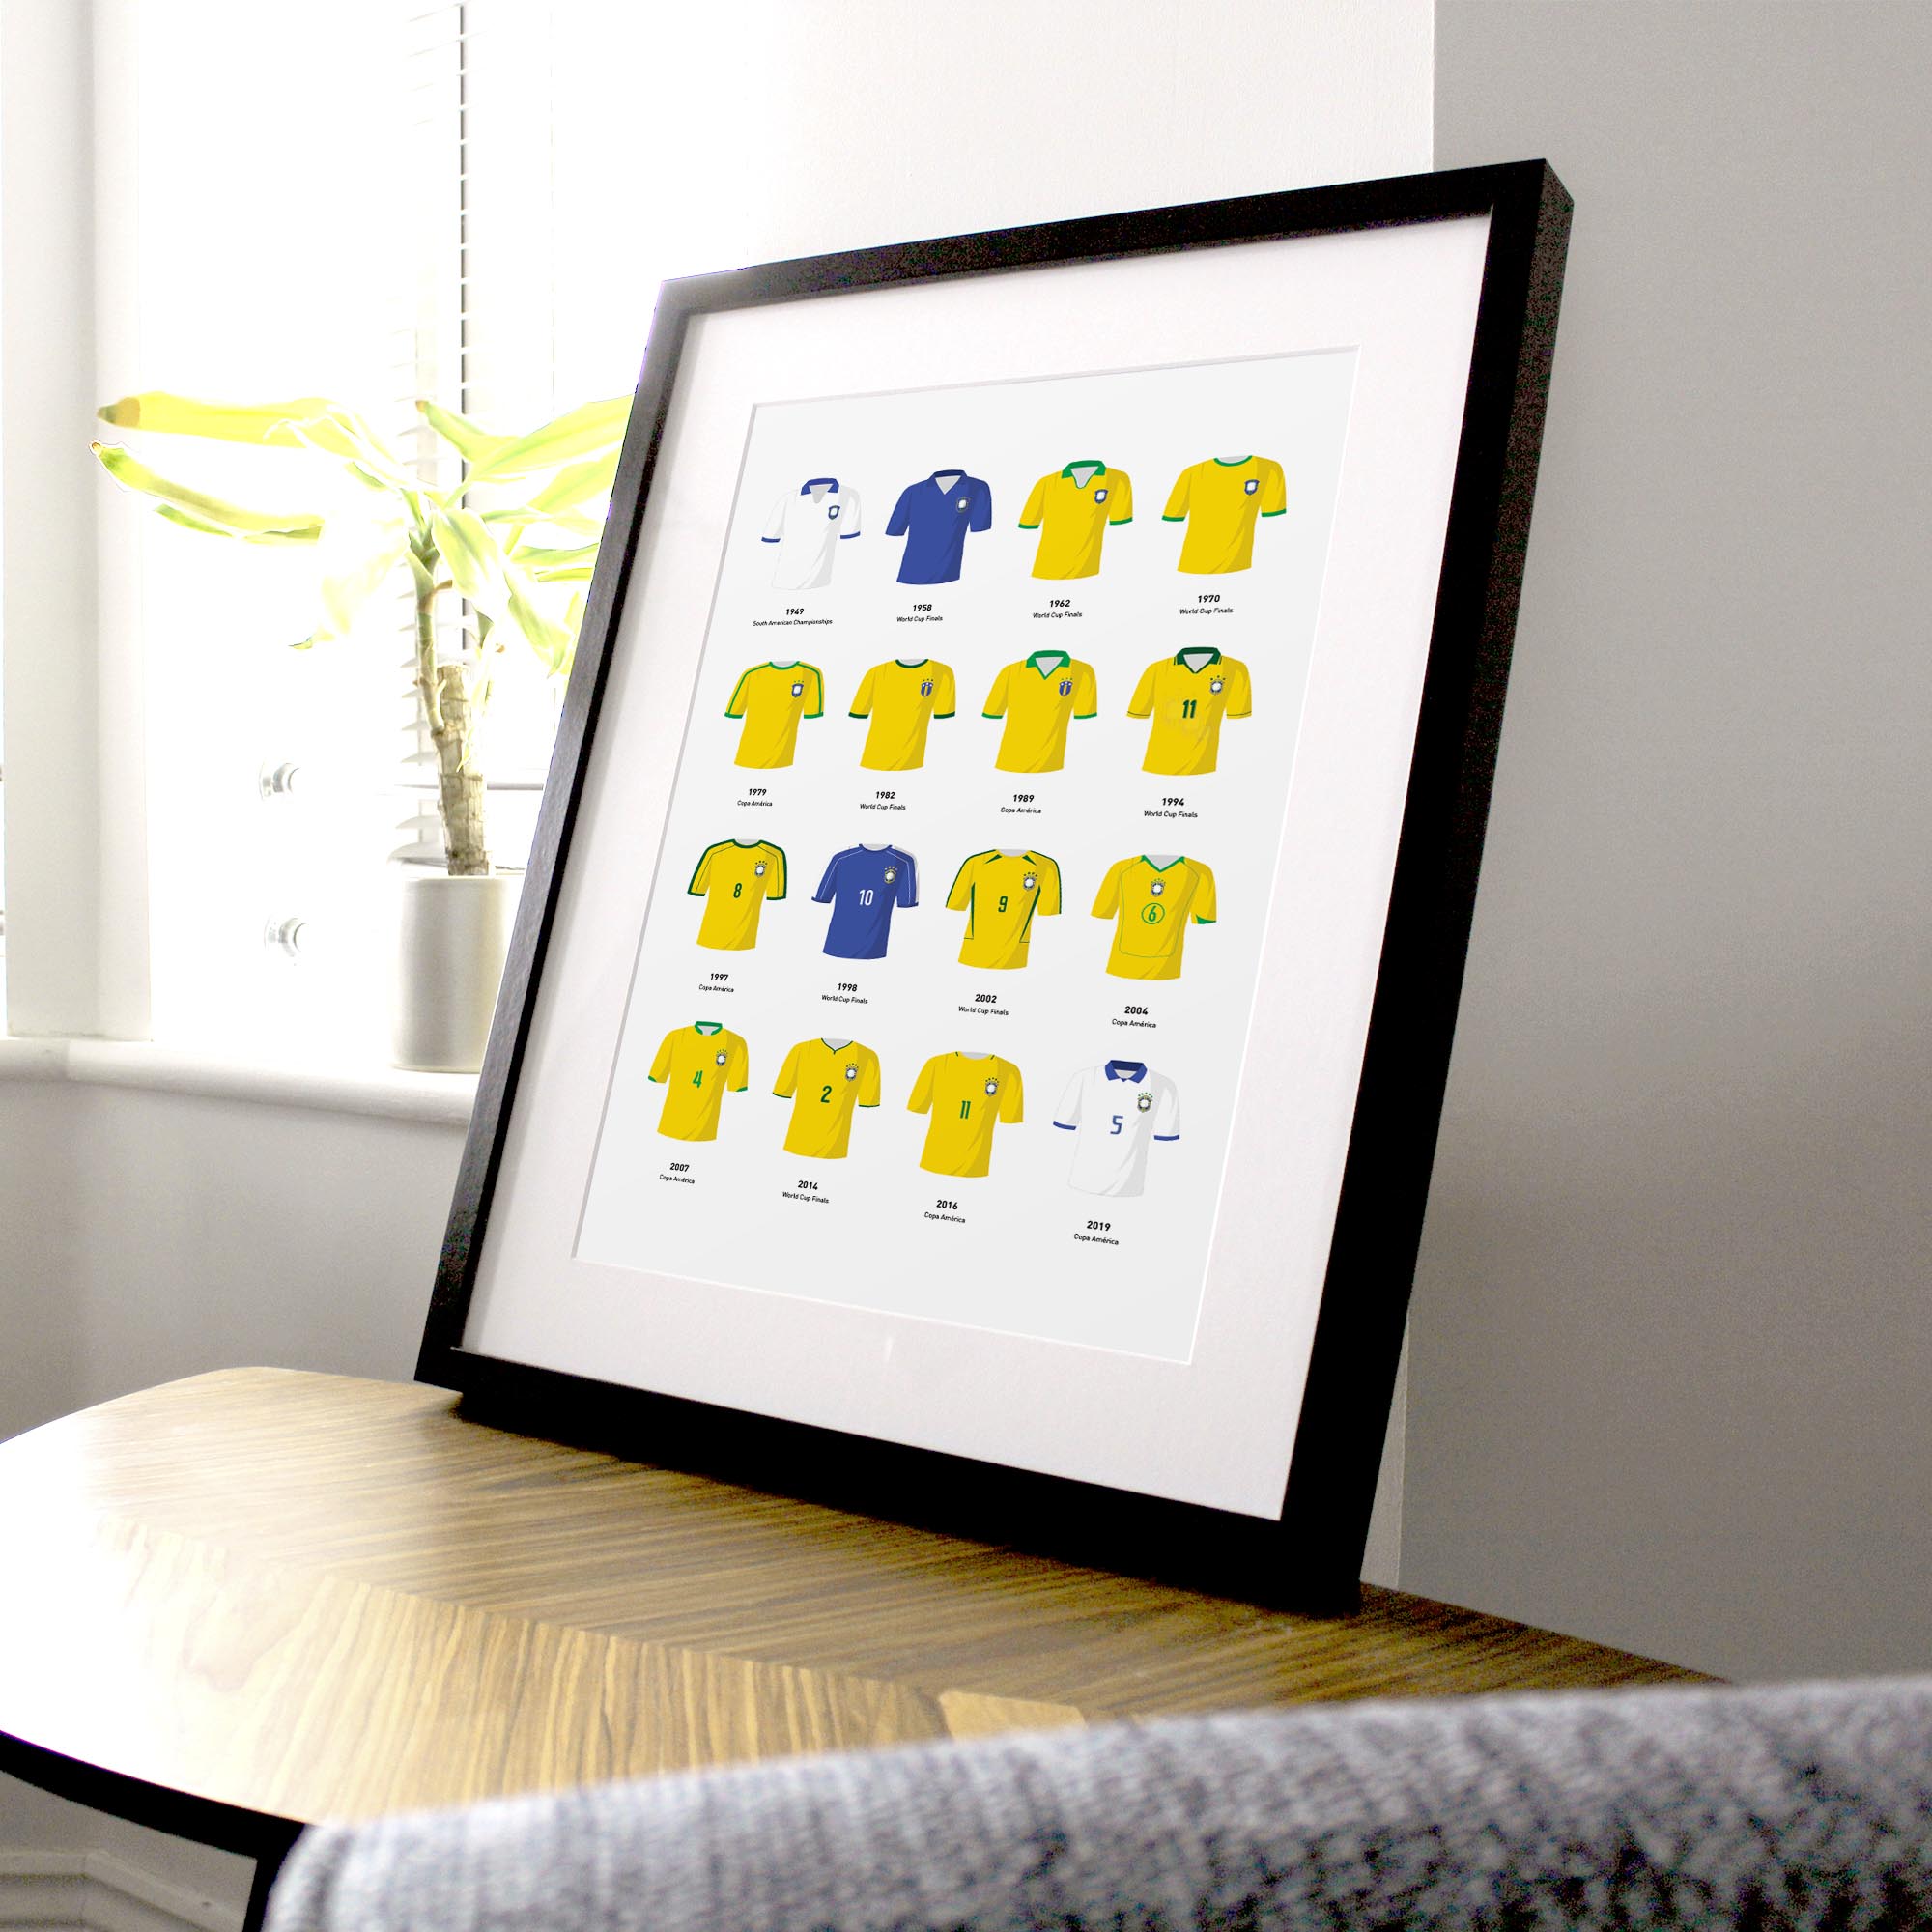 Brazil Classic Kits Football Team Print Good Team On Paper